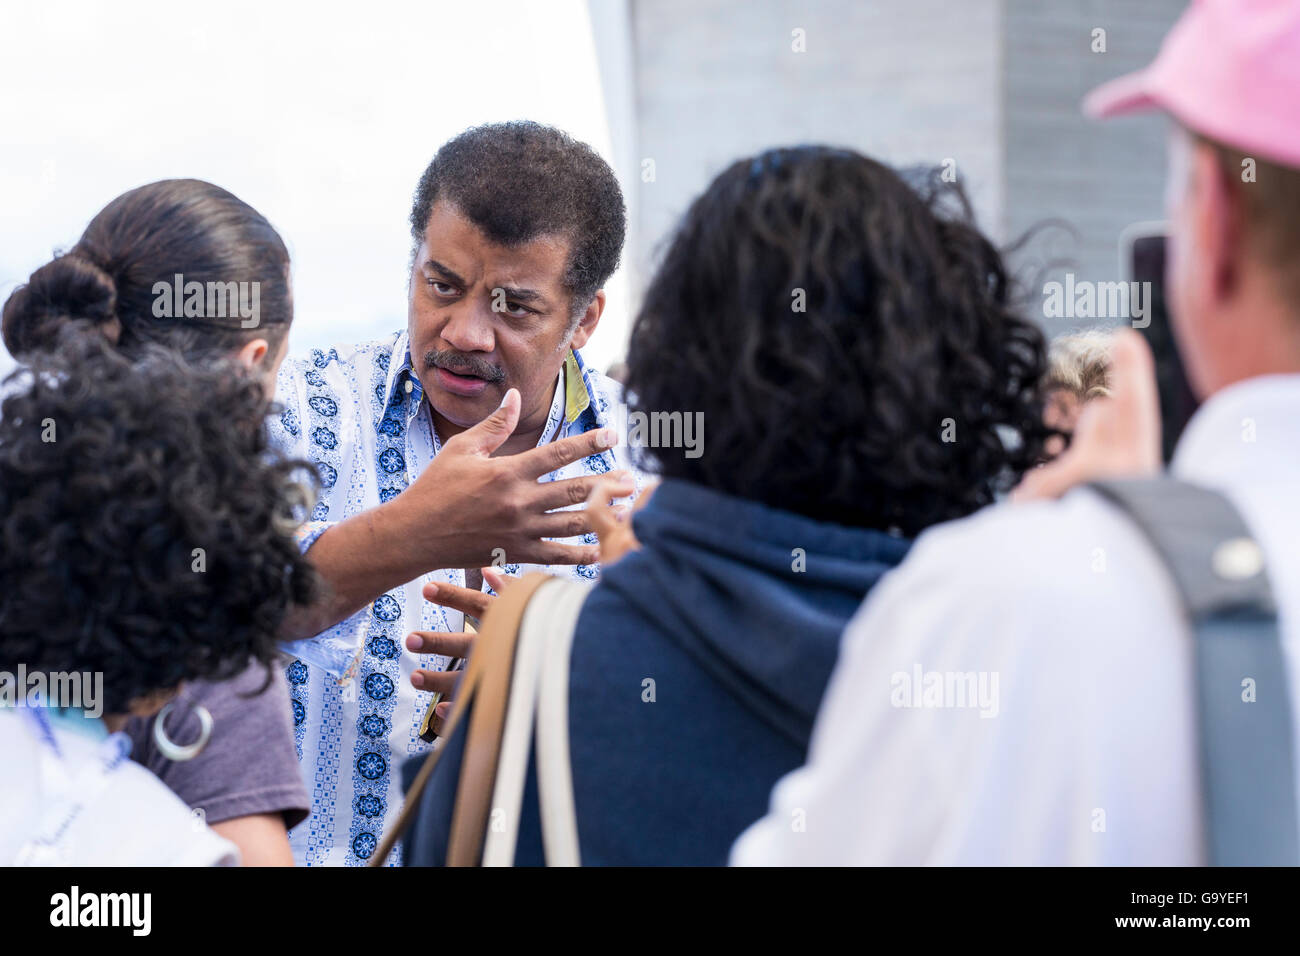 Neil deGrasse Tyson parle avec des fans au festival Starmus dans l'Auditorio Adan Martin, Santa Cruz de Tenerife.il est un astrophysicien américain, cosmologue, auteur, et communicateur scientifique. Îles Canaries, Espagne Banque D'Images